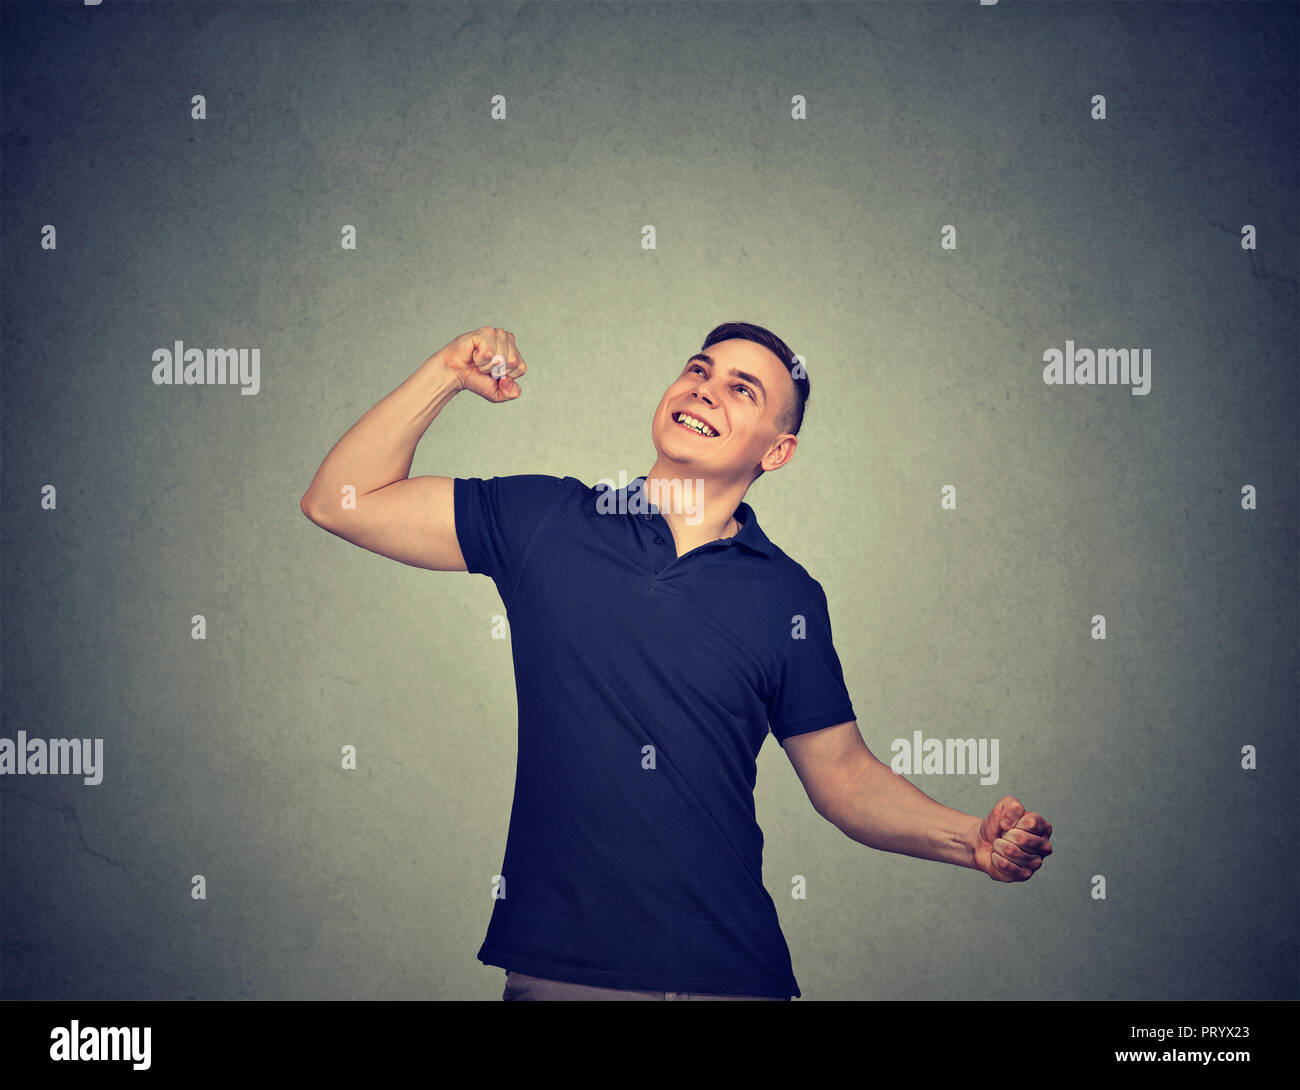 Cheerful young man holding fists gaiement dans l'excitation de la réussite à la haut sur fond gris Banque D'Images